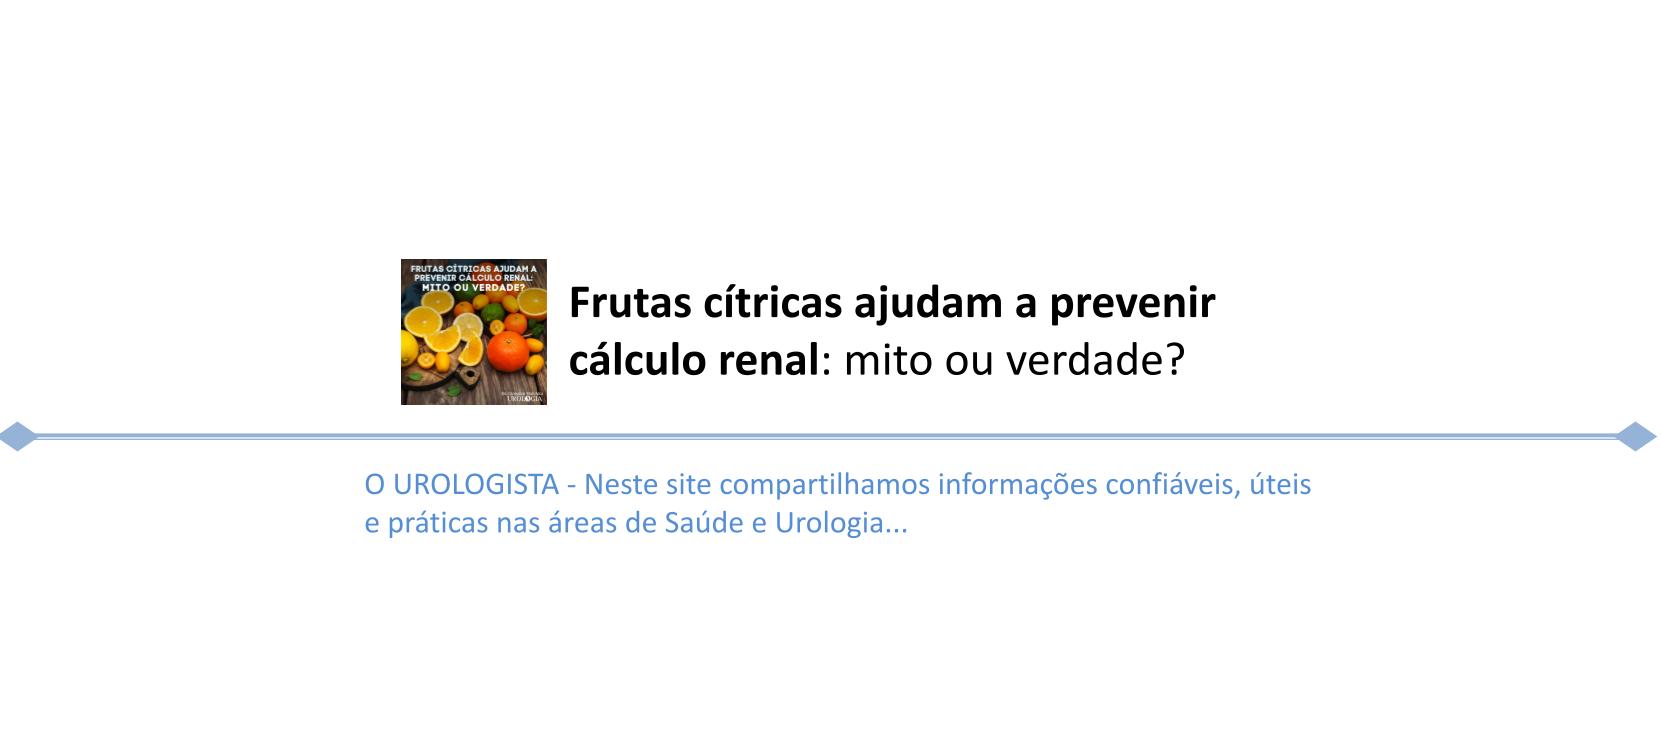 Frutas cítricas ajudam a prevenir cálculo renal: mito ou verdade?